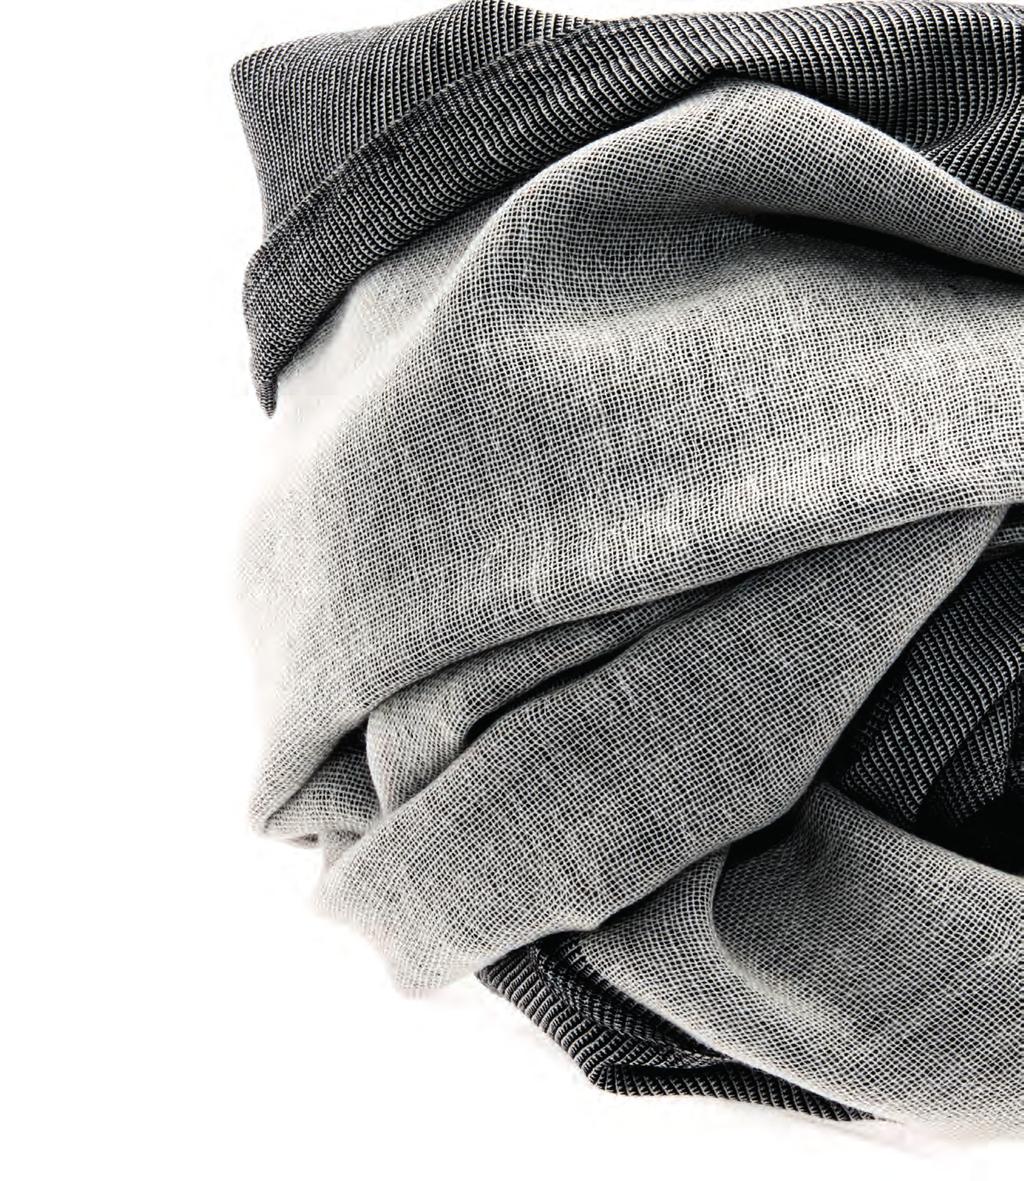 ÜBER MAHEELA Maheela-Schals sind mehr als ein Accessoire sie sind Mode ohne Kompromisse.